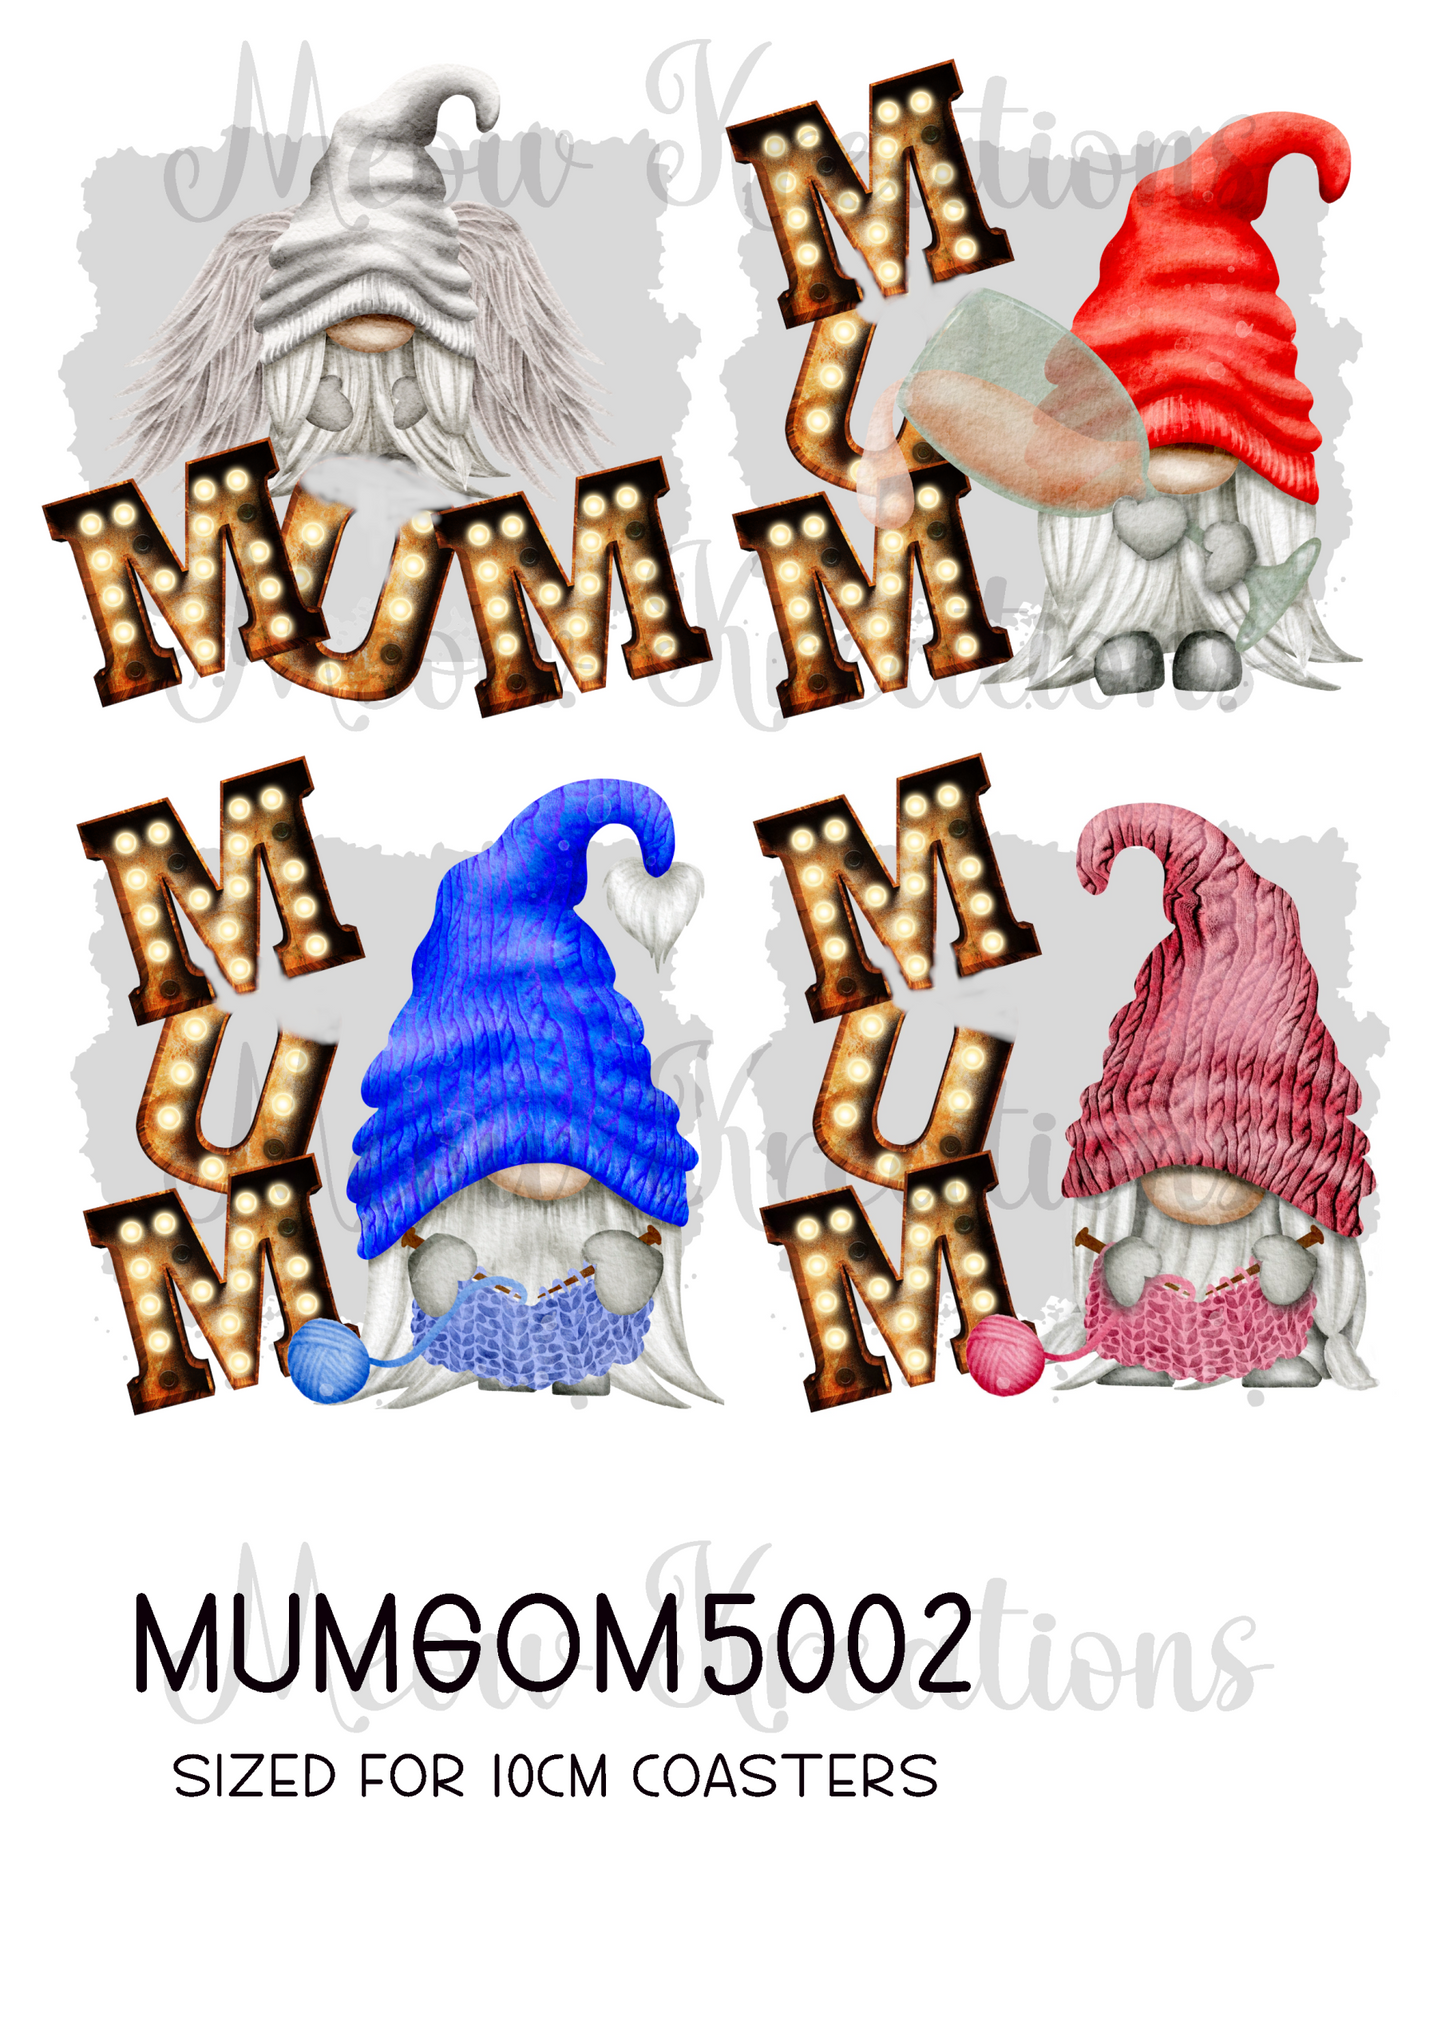 MUMGOM 5002